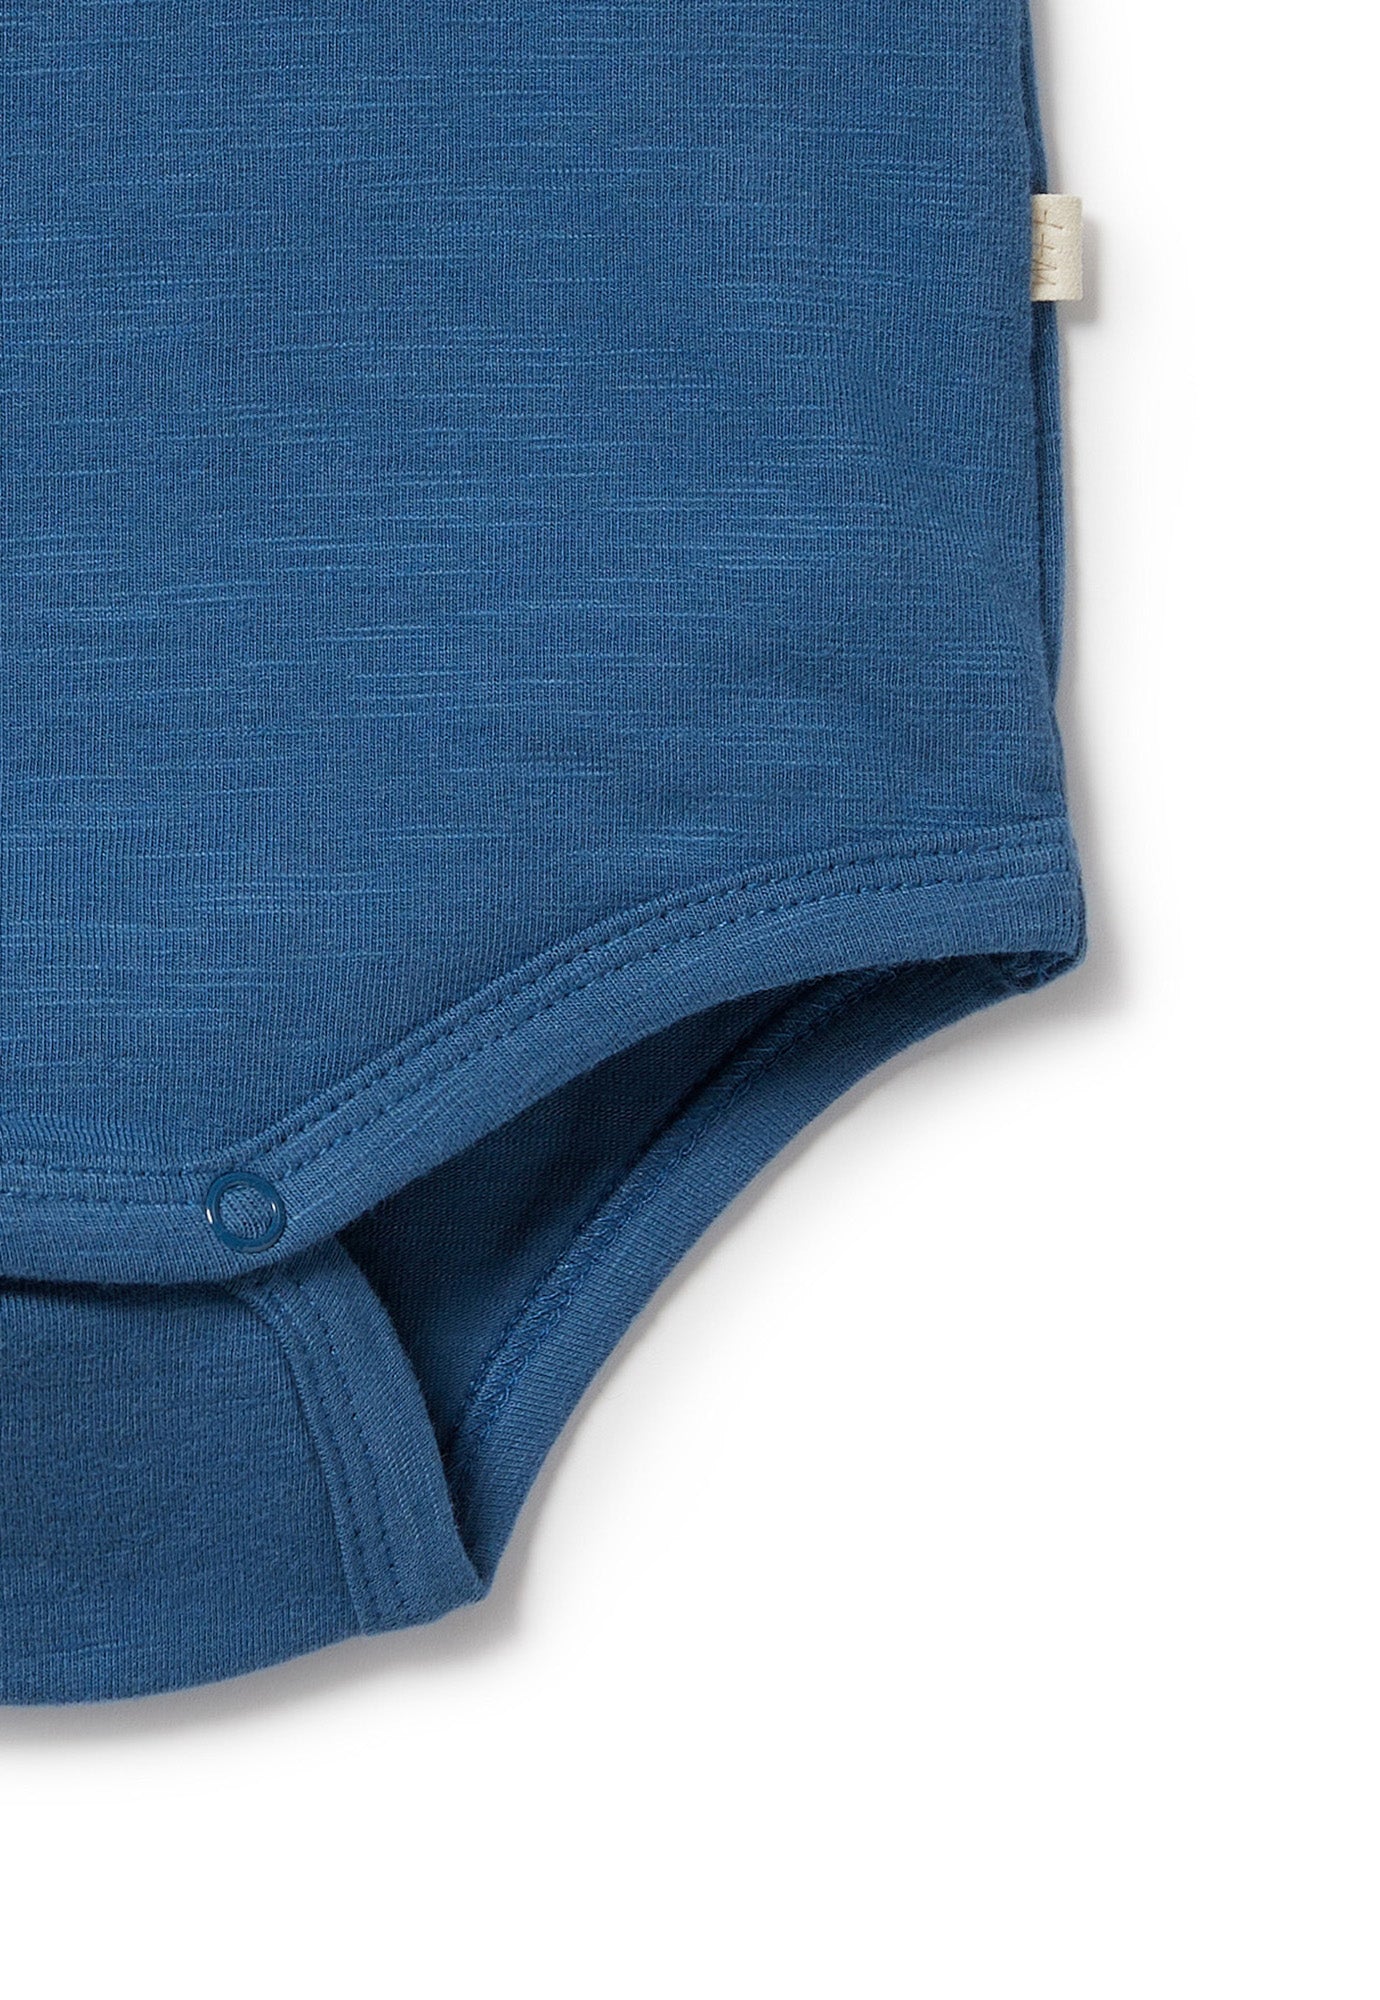 wilson & frenchy - pocket bodysuit - dark blue